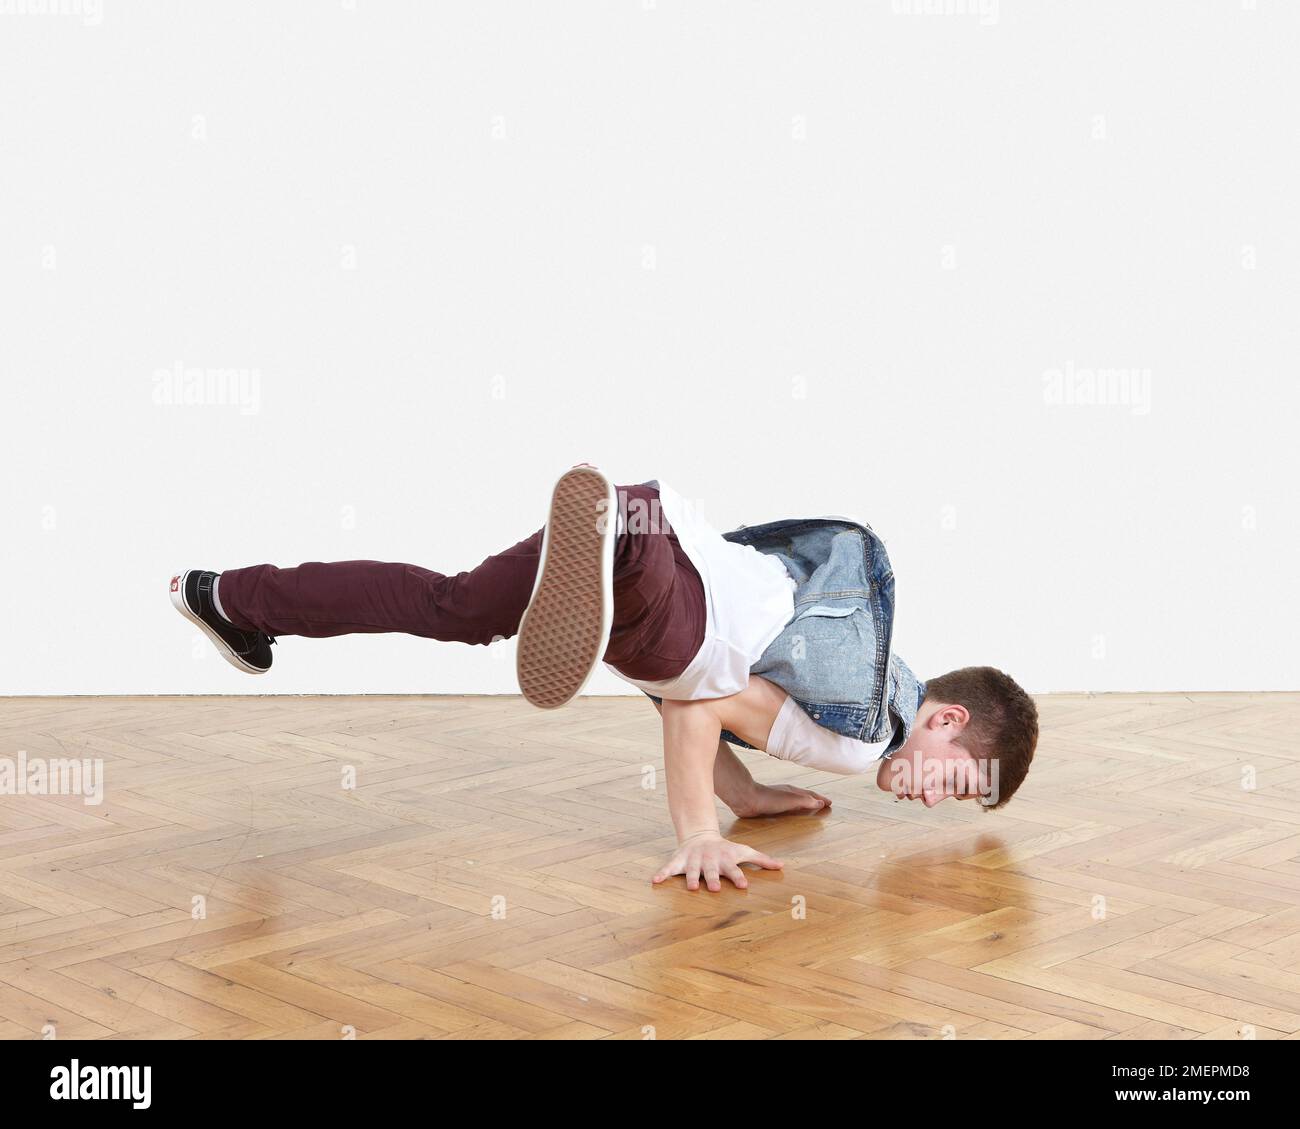 Jugendliche breakdance Moves durchführen Stockfoto